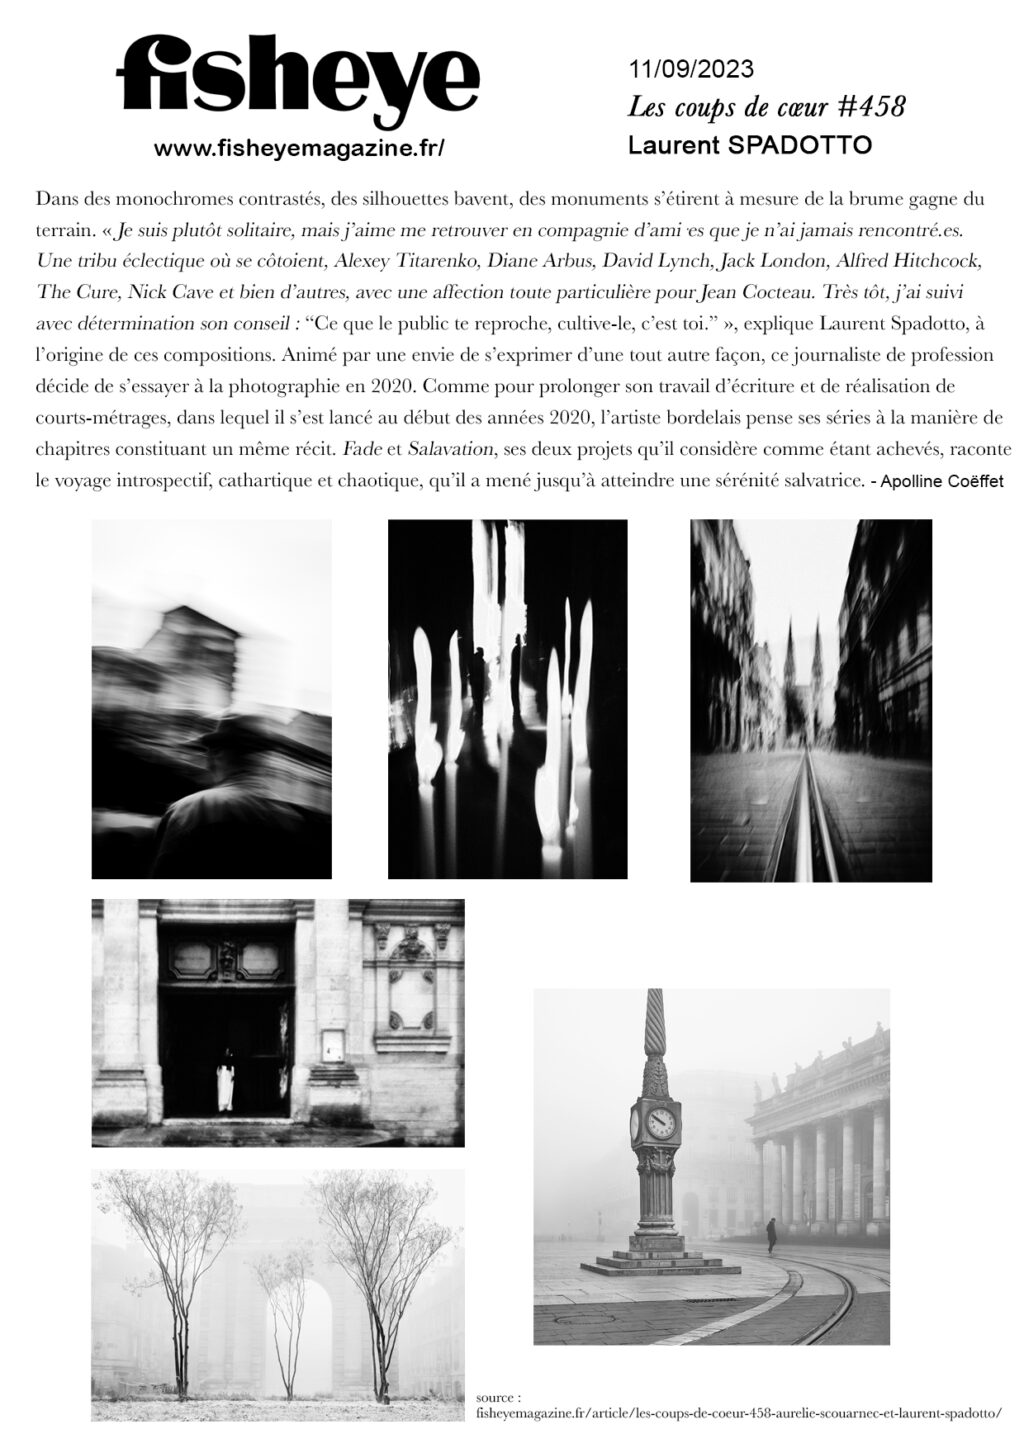 Fisheye Magazine - Coup de coeur, Laurent Spadotto, artiste photographe à Bordeaux